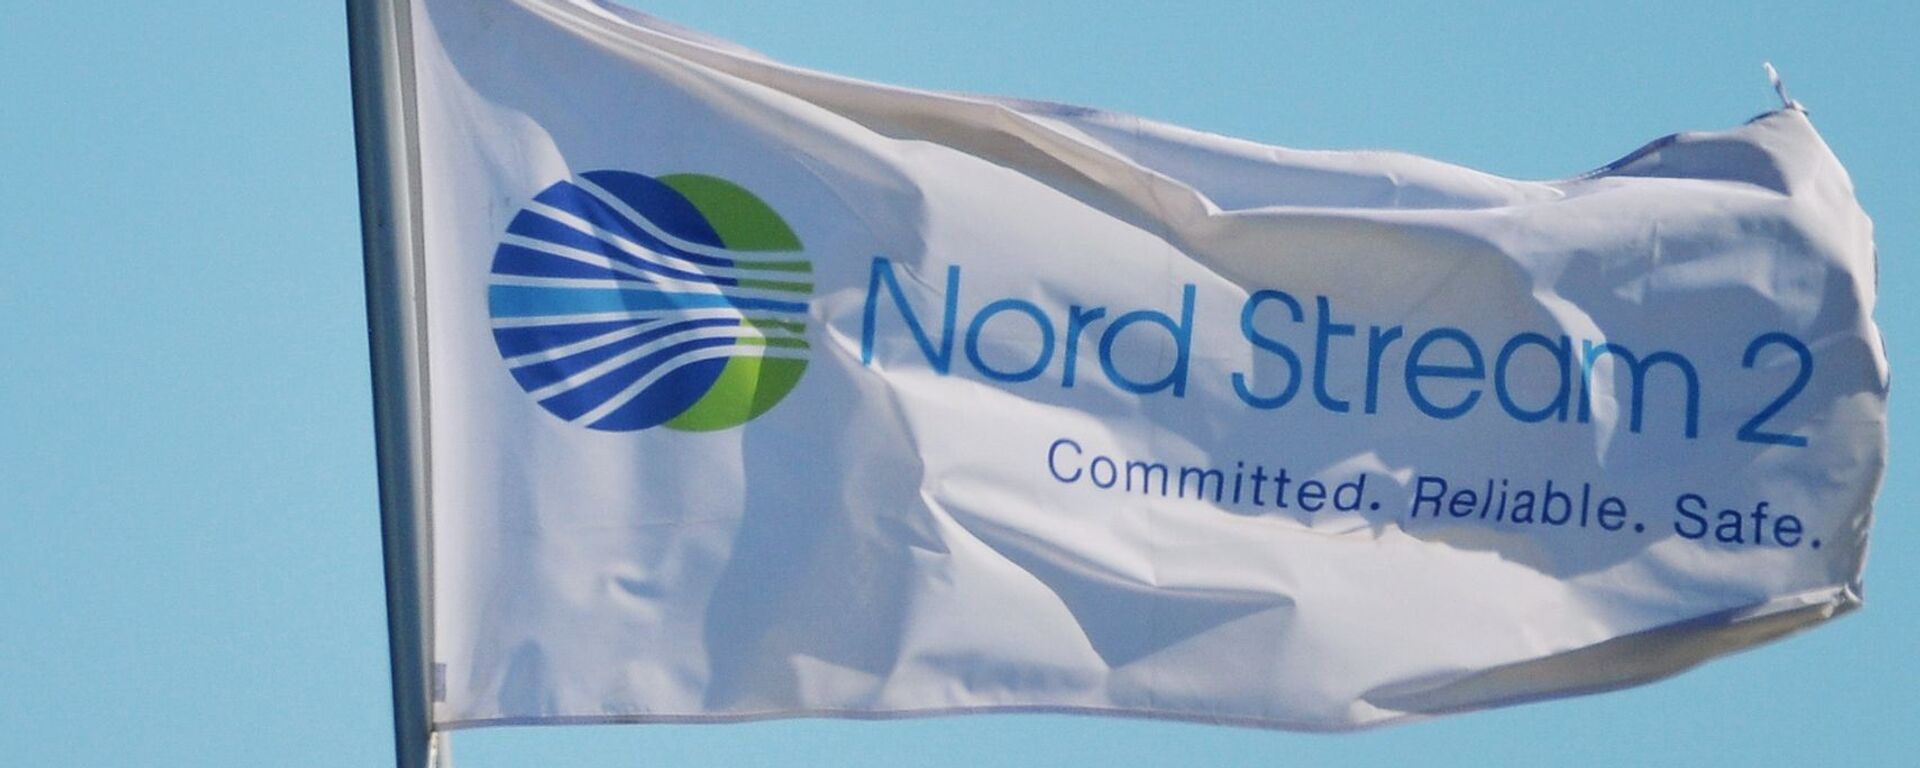  Zastava sa logom kompanije Nord strim 2 koja vodi izgradnju gasovoda Severni tok 2 u Nemačkoj - Sputnik Srbija, 1920, 19.03.2021